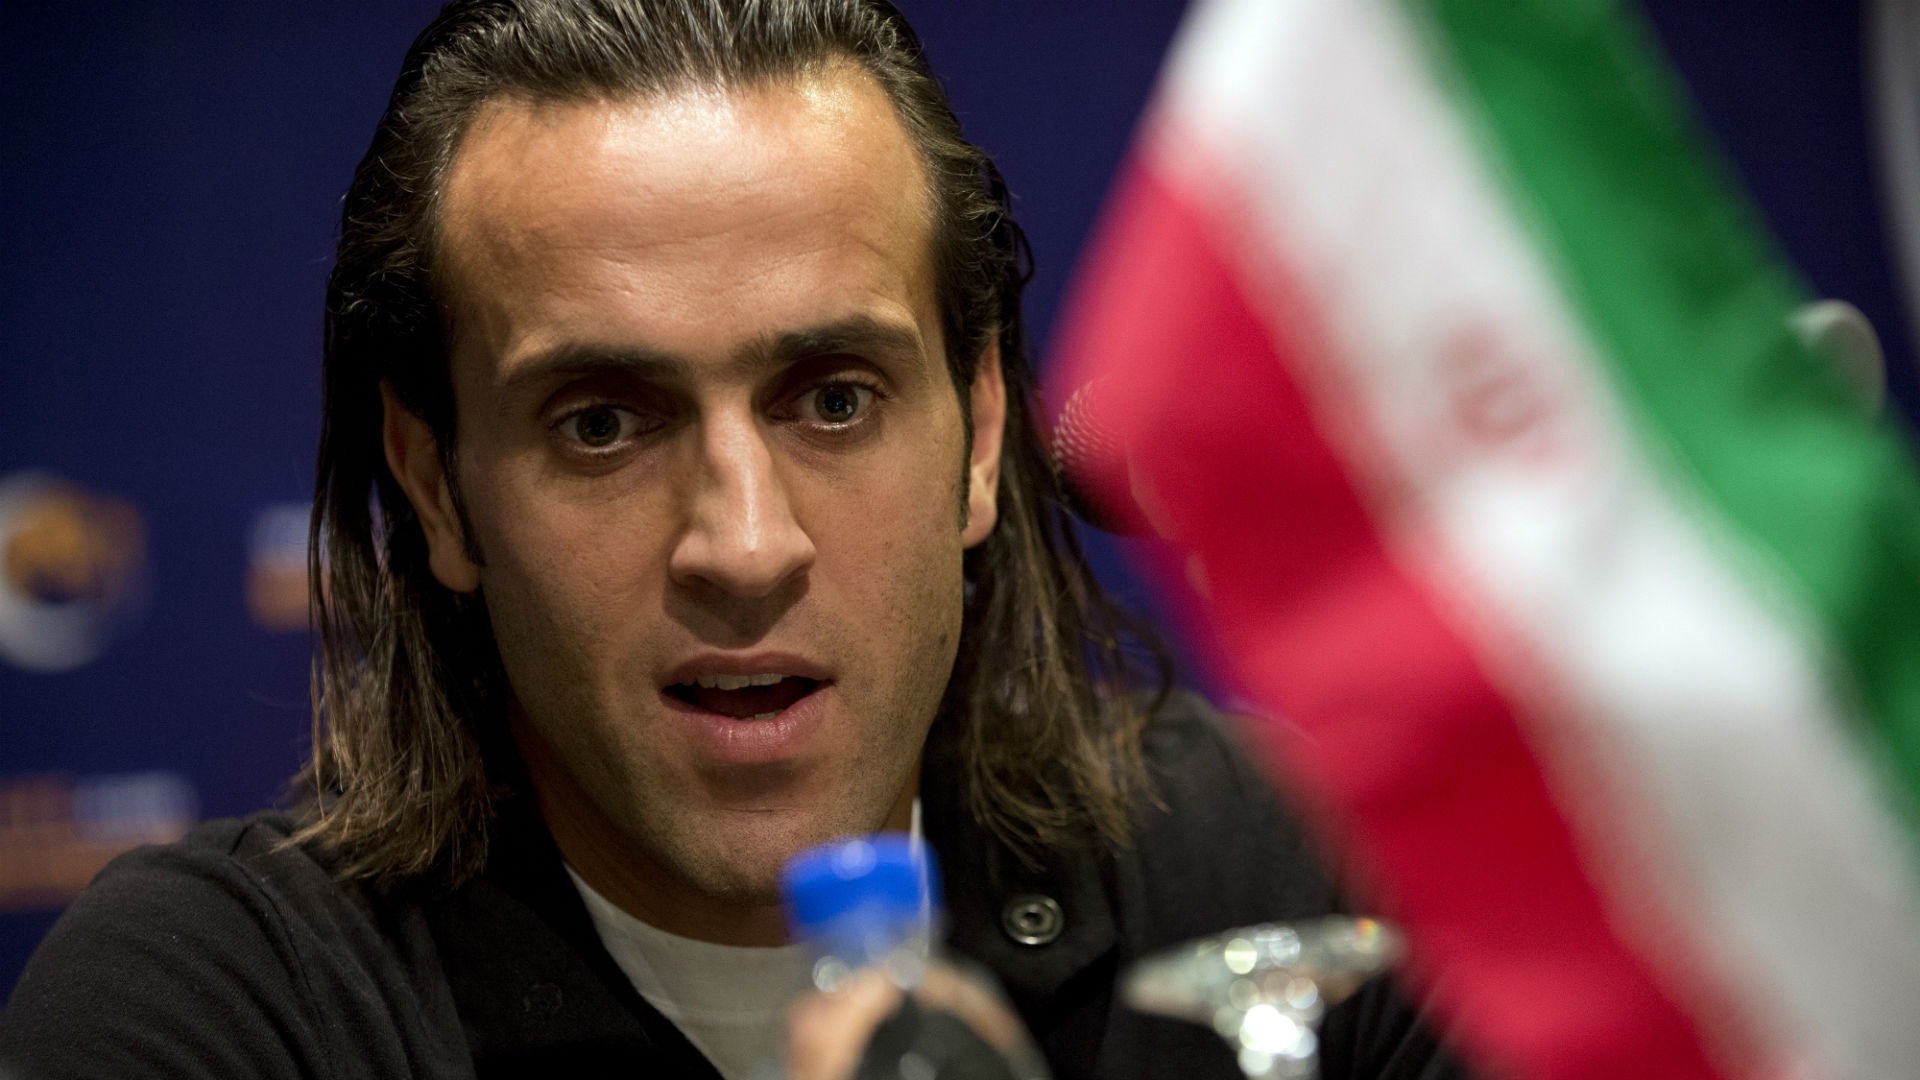 النجم الإيراني علي كريمي من ملعب كرة القدم إلى عالم السوشيال ميديا والسياسة